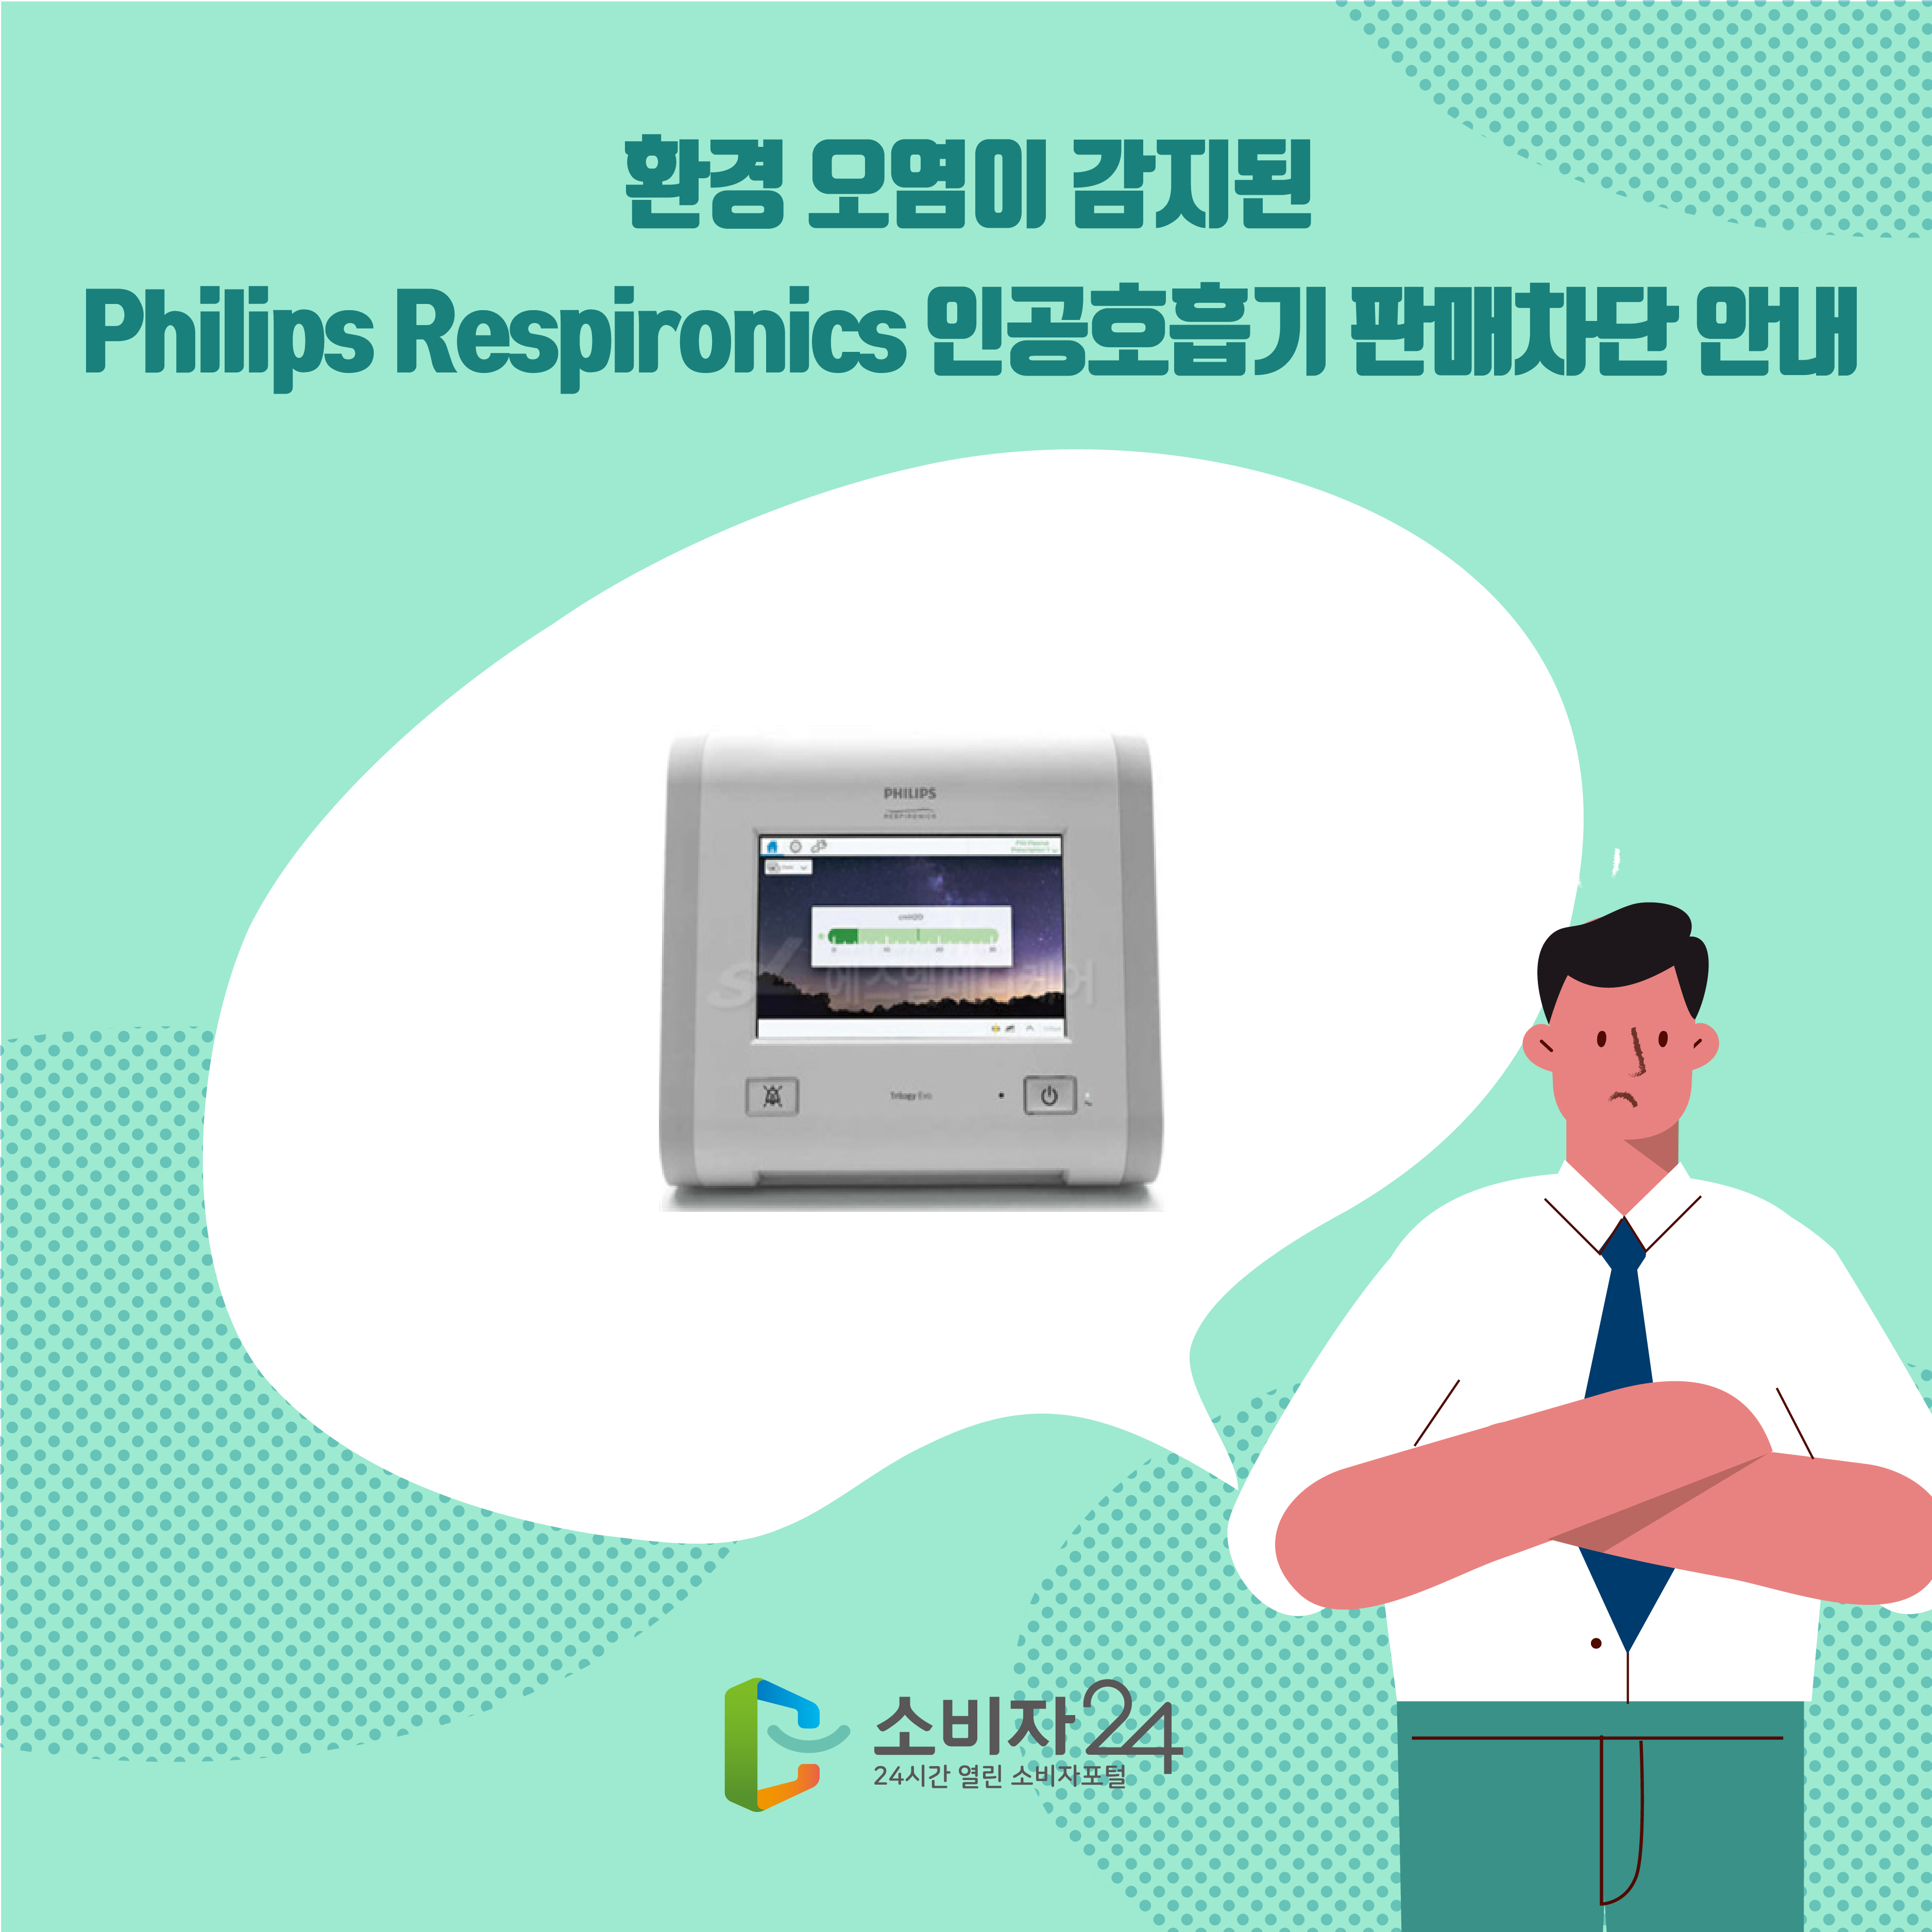 환경 오염이 감지된 Philips Respironics 인공호흡기 판매차단 안내 1번째 이미지